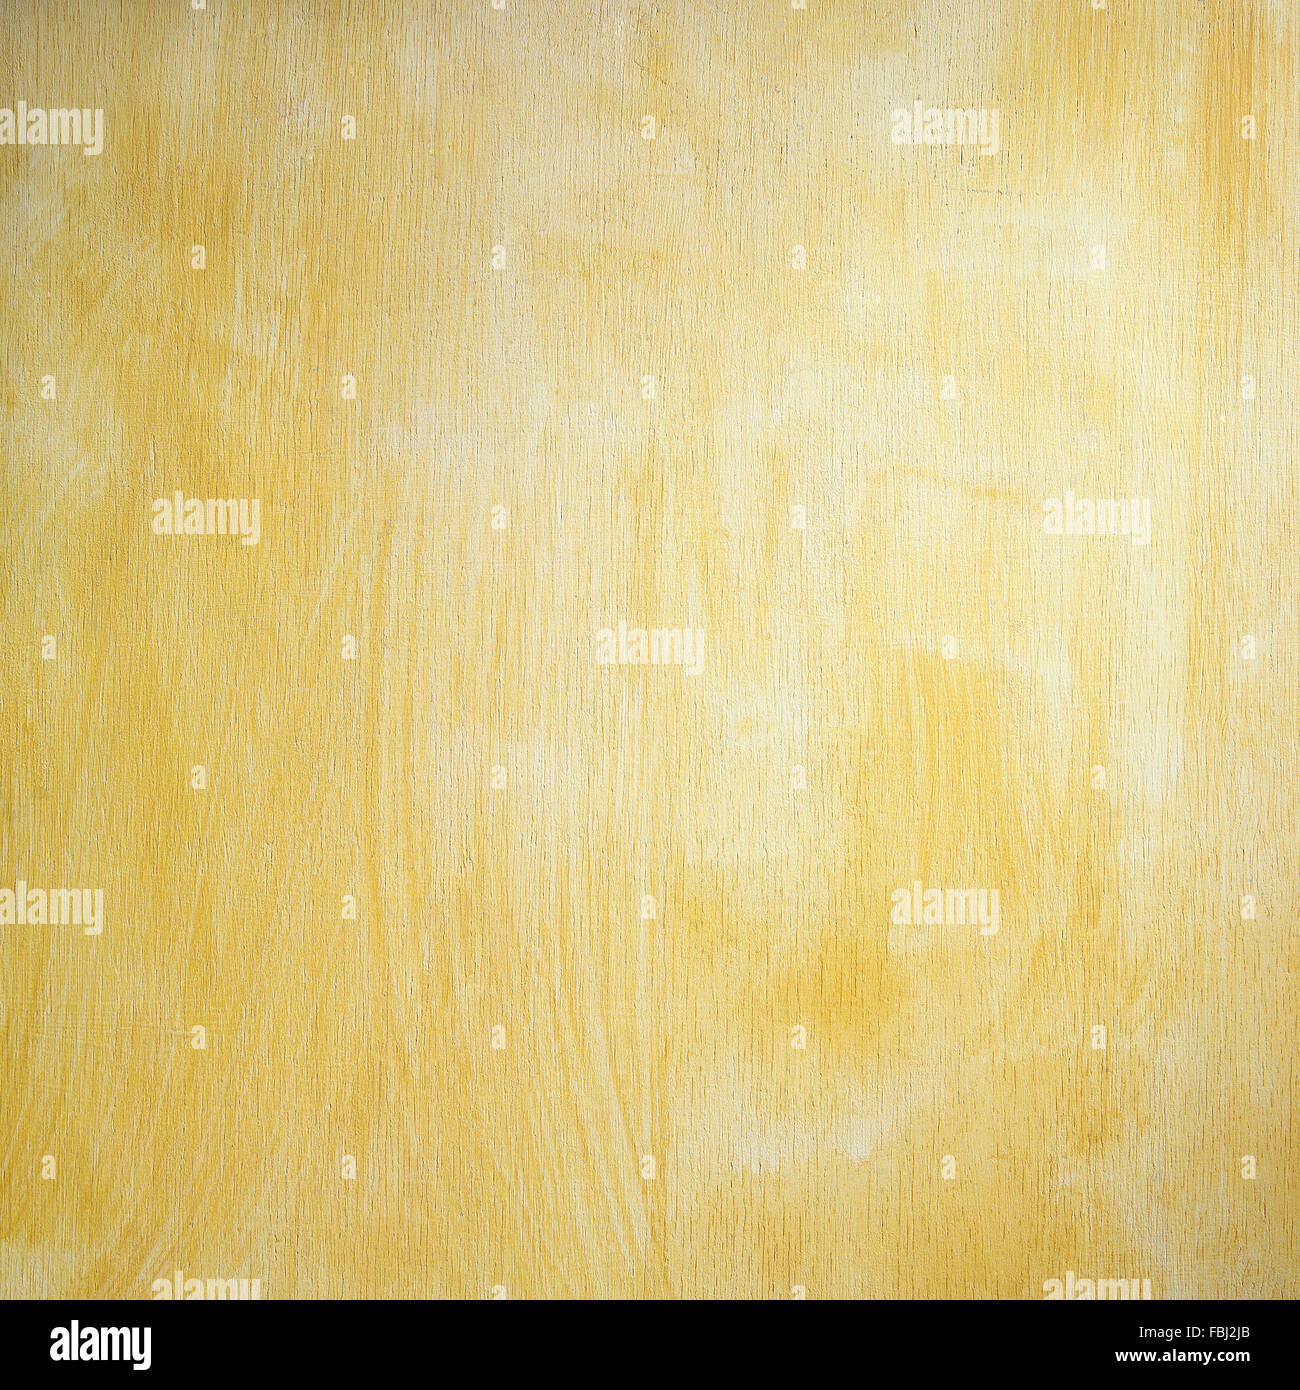 Plaque en bois peint de couleur jaune, les traits de pinceau texture Banque D'Images